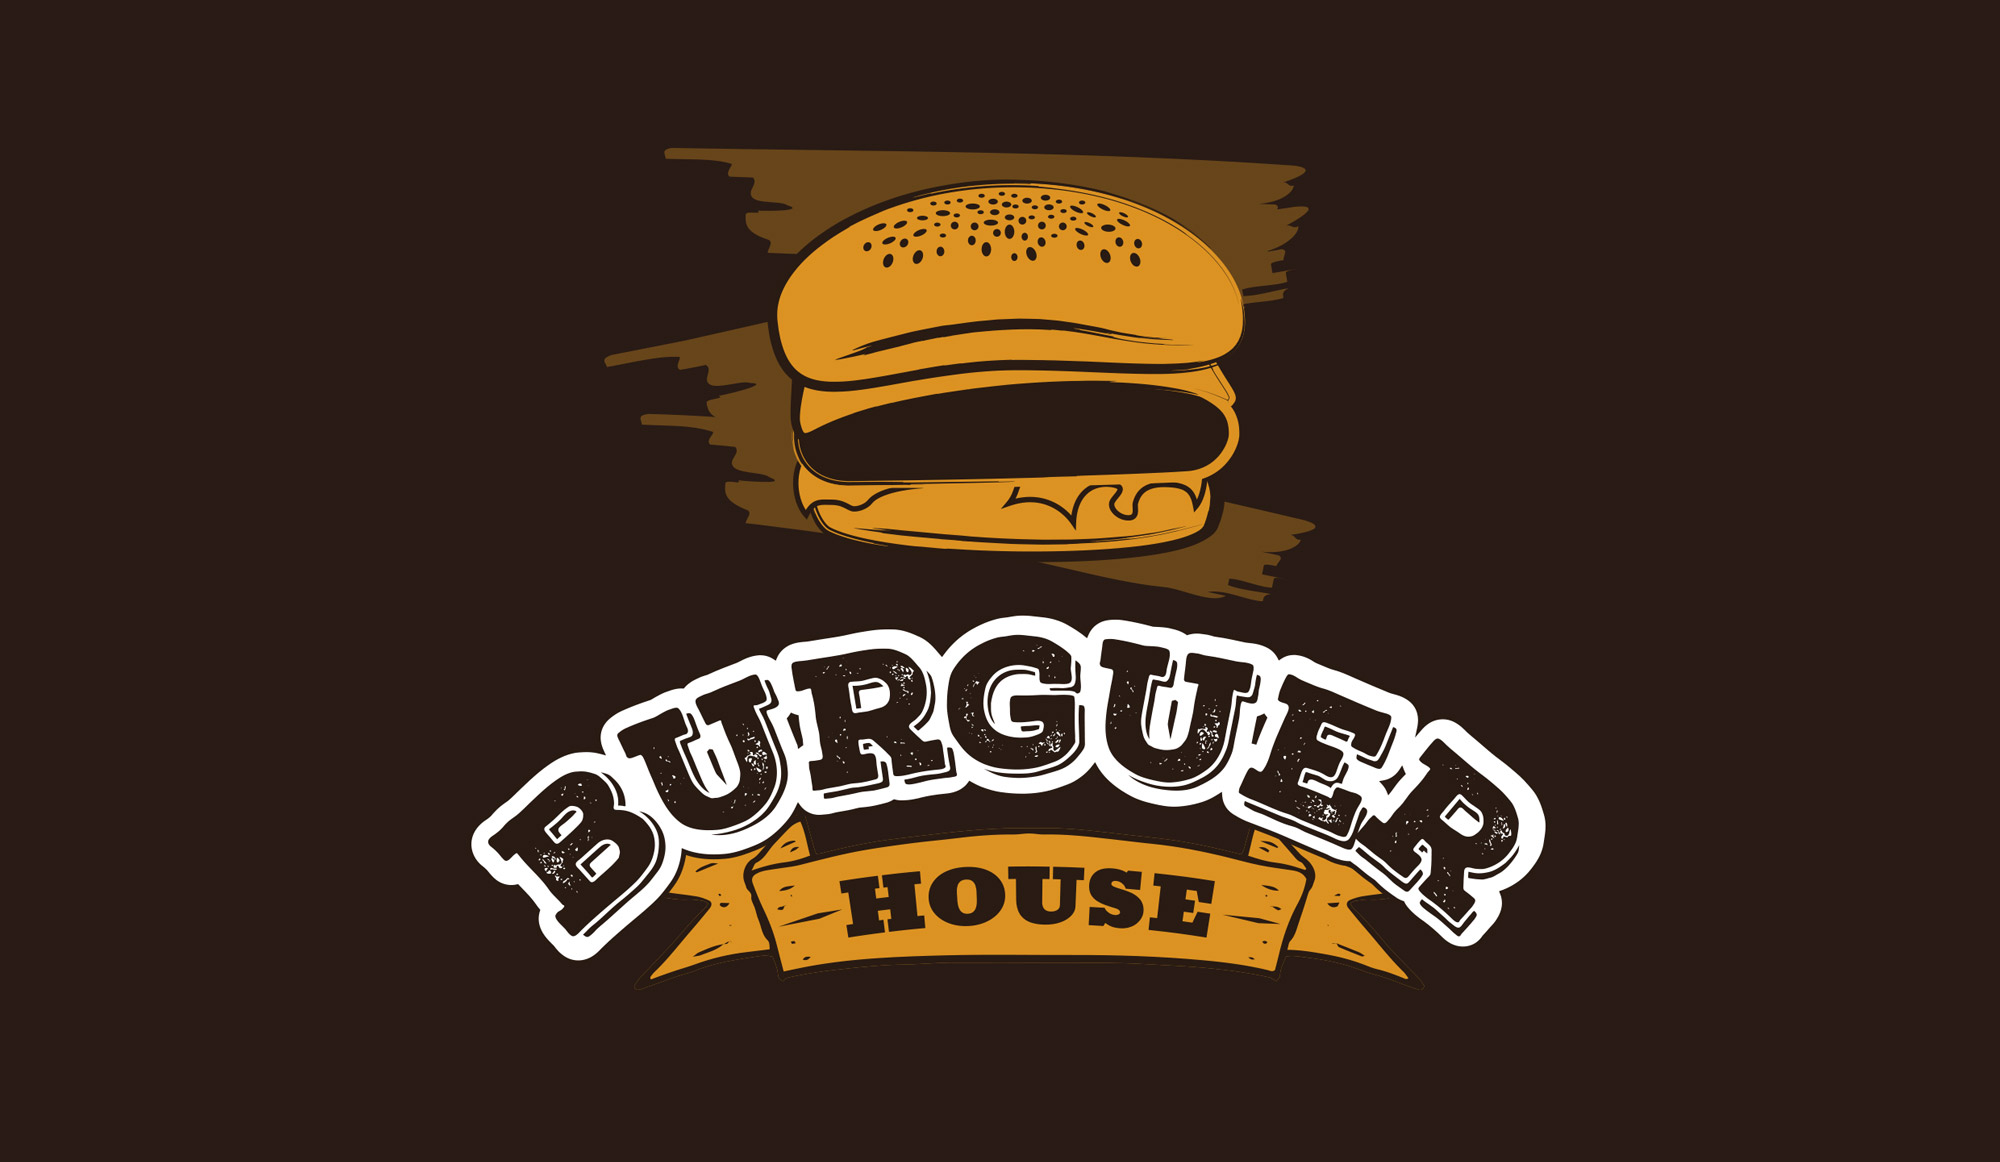 Burguer house